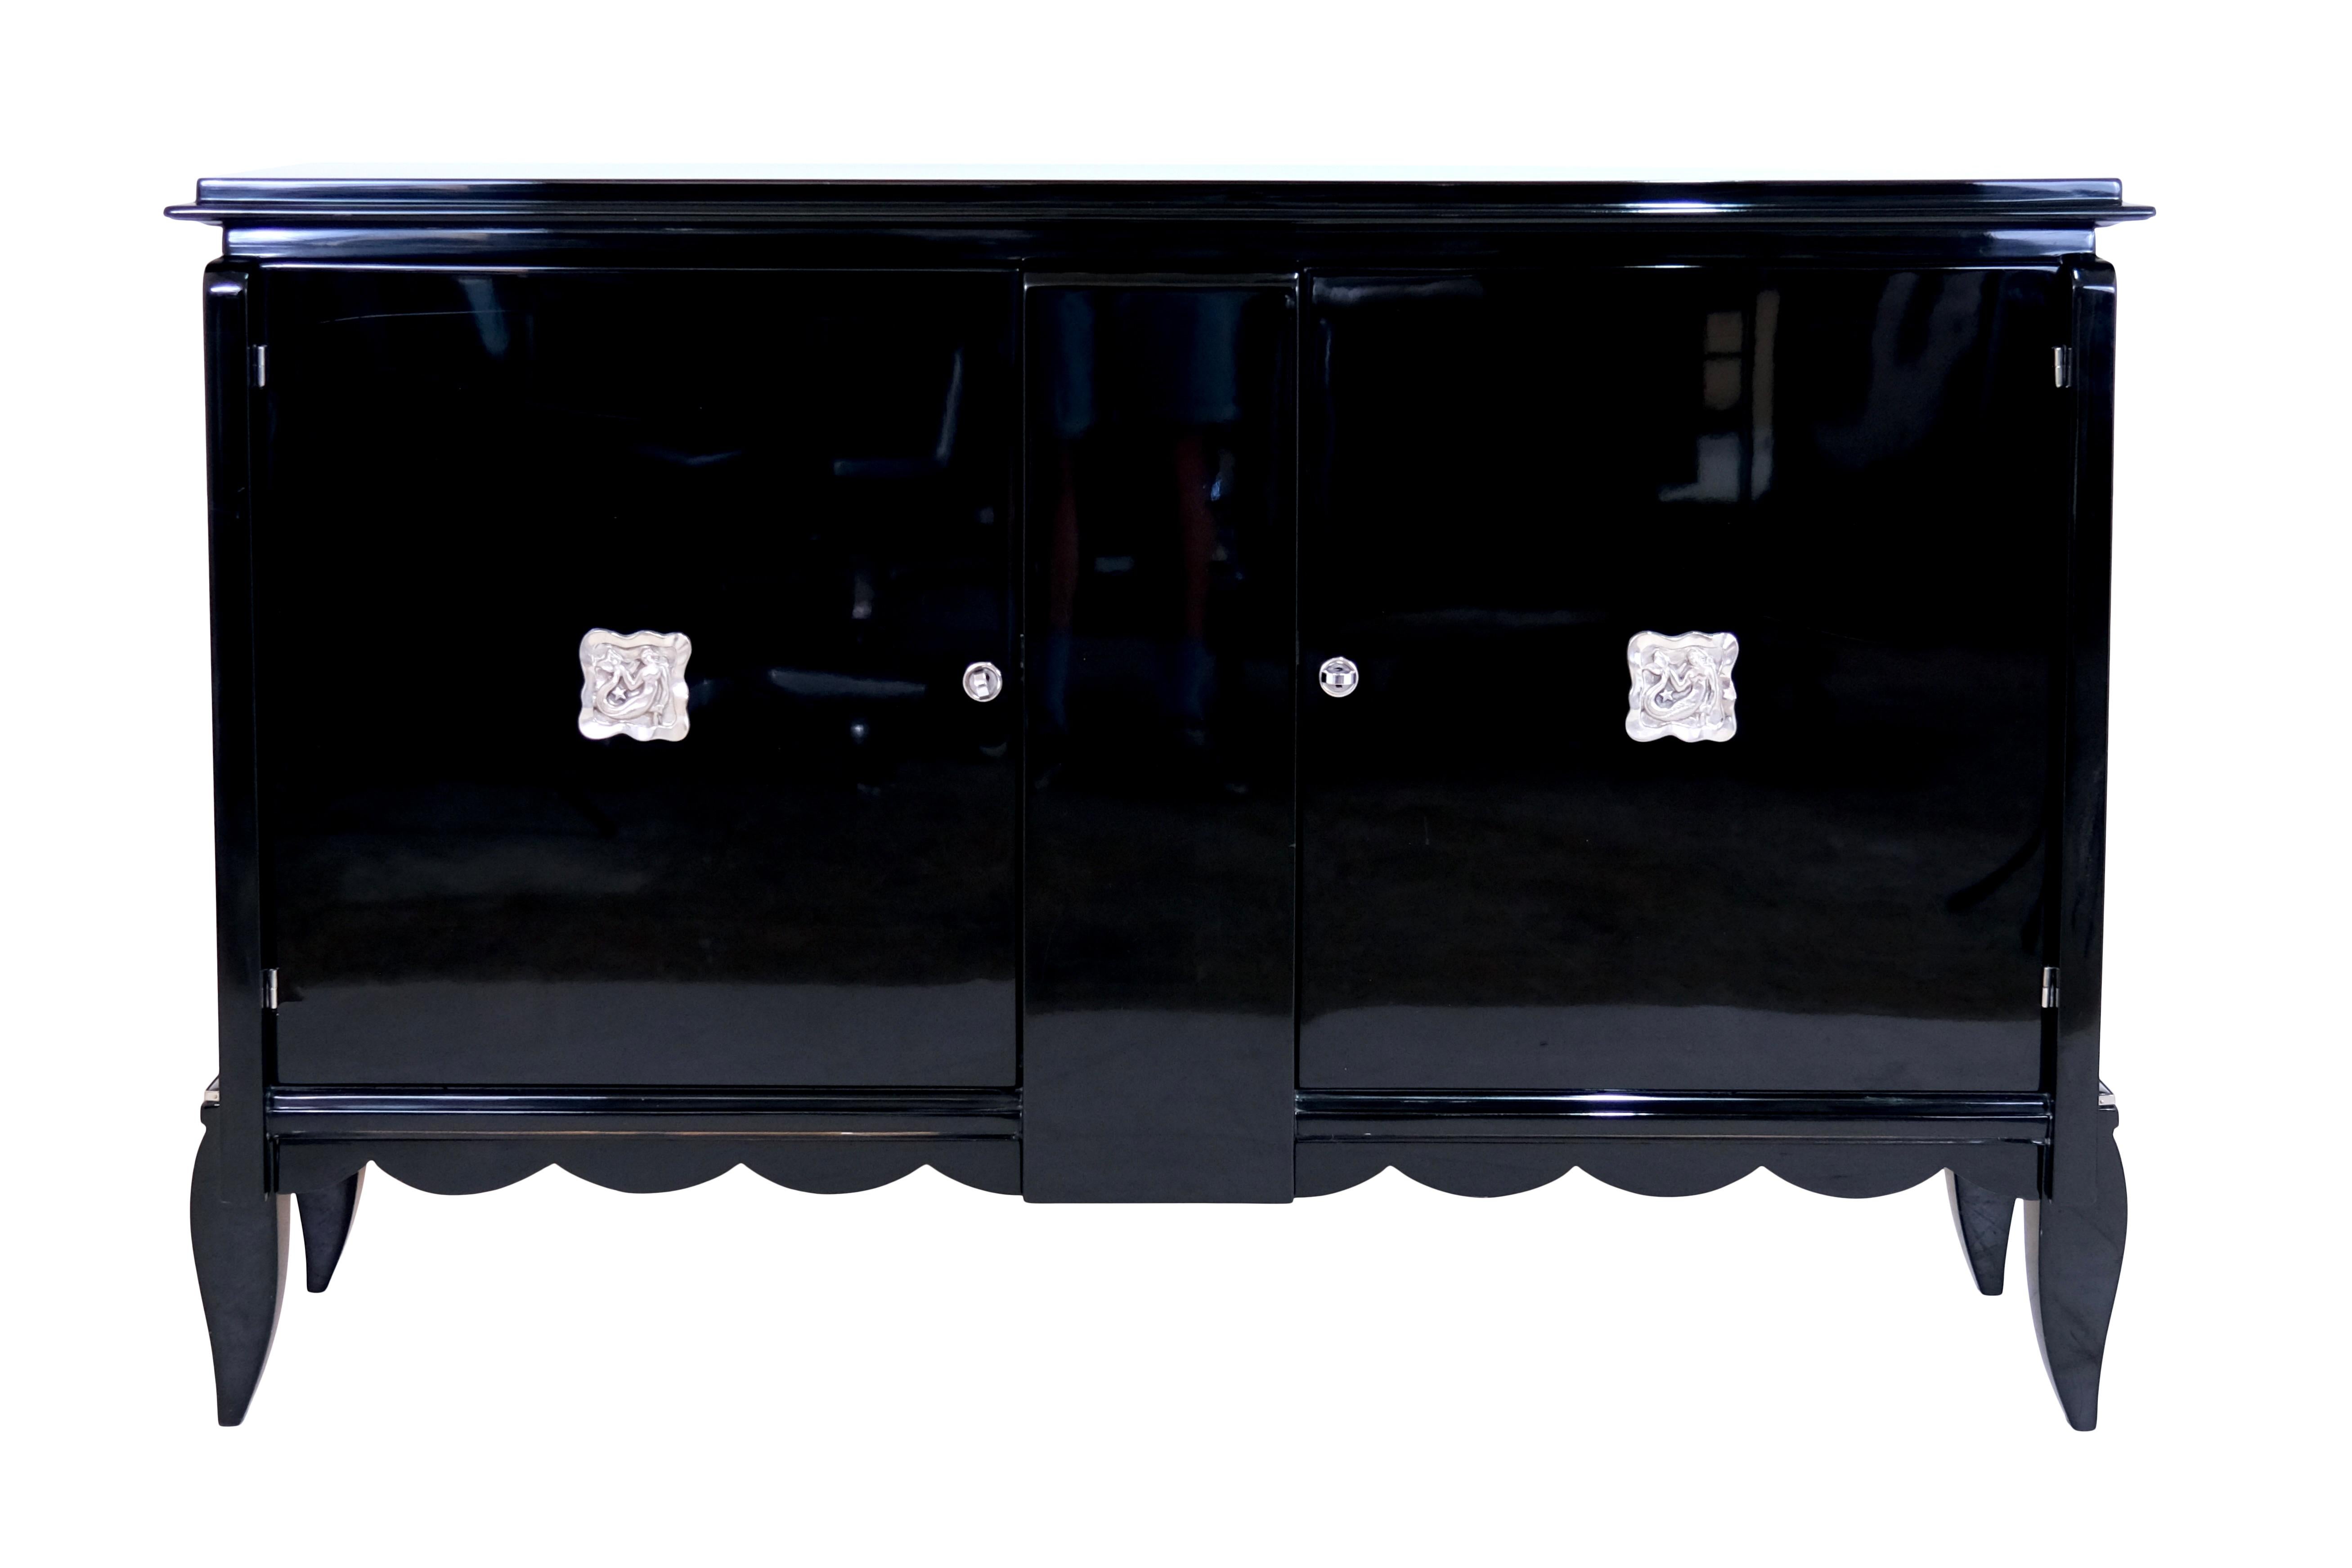 Sideboard in schwarzem Lack mit Emblemen

Sideboard mit zwei Türen
Klavierlack, schwarz hochglänzend
Verchromte Metallembleme

Original Art Deco, Frankreich 1930er Jahre

Abmessungen:
Breite: 144 cm
Höhe: 94,5 cm
Tiefe: 45 cm